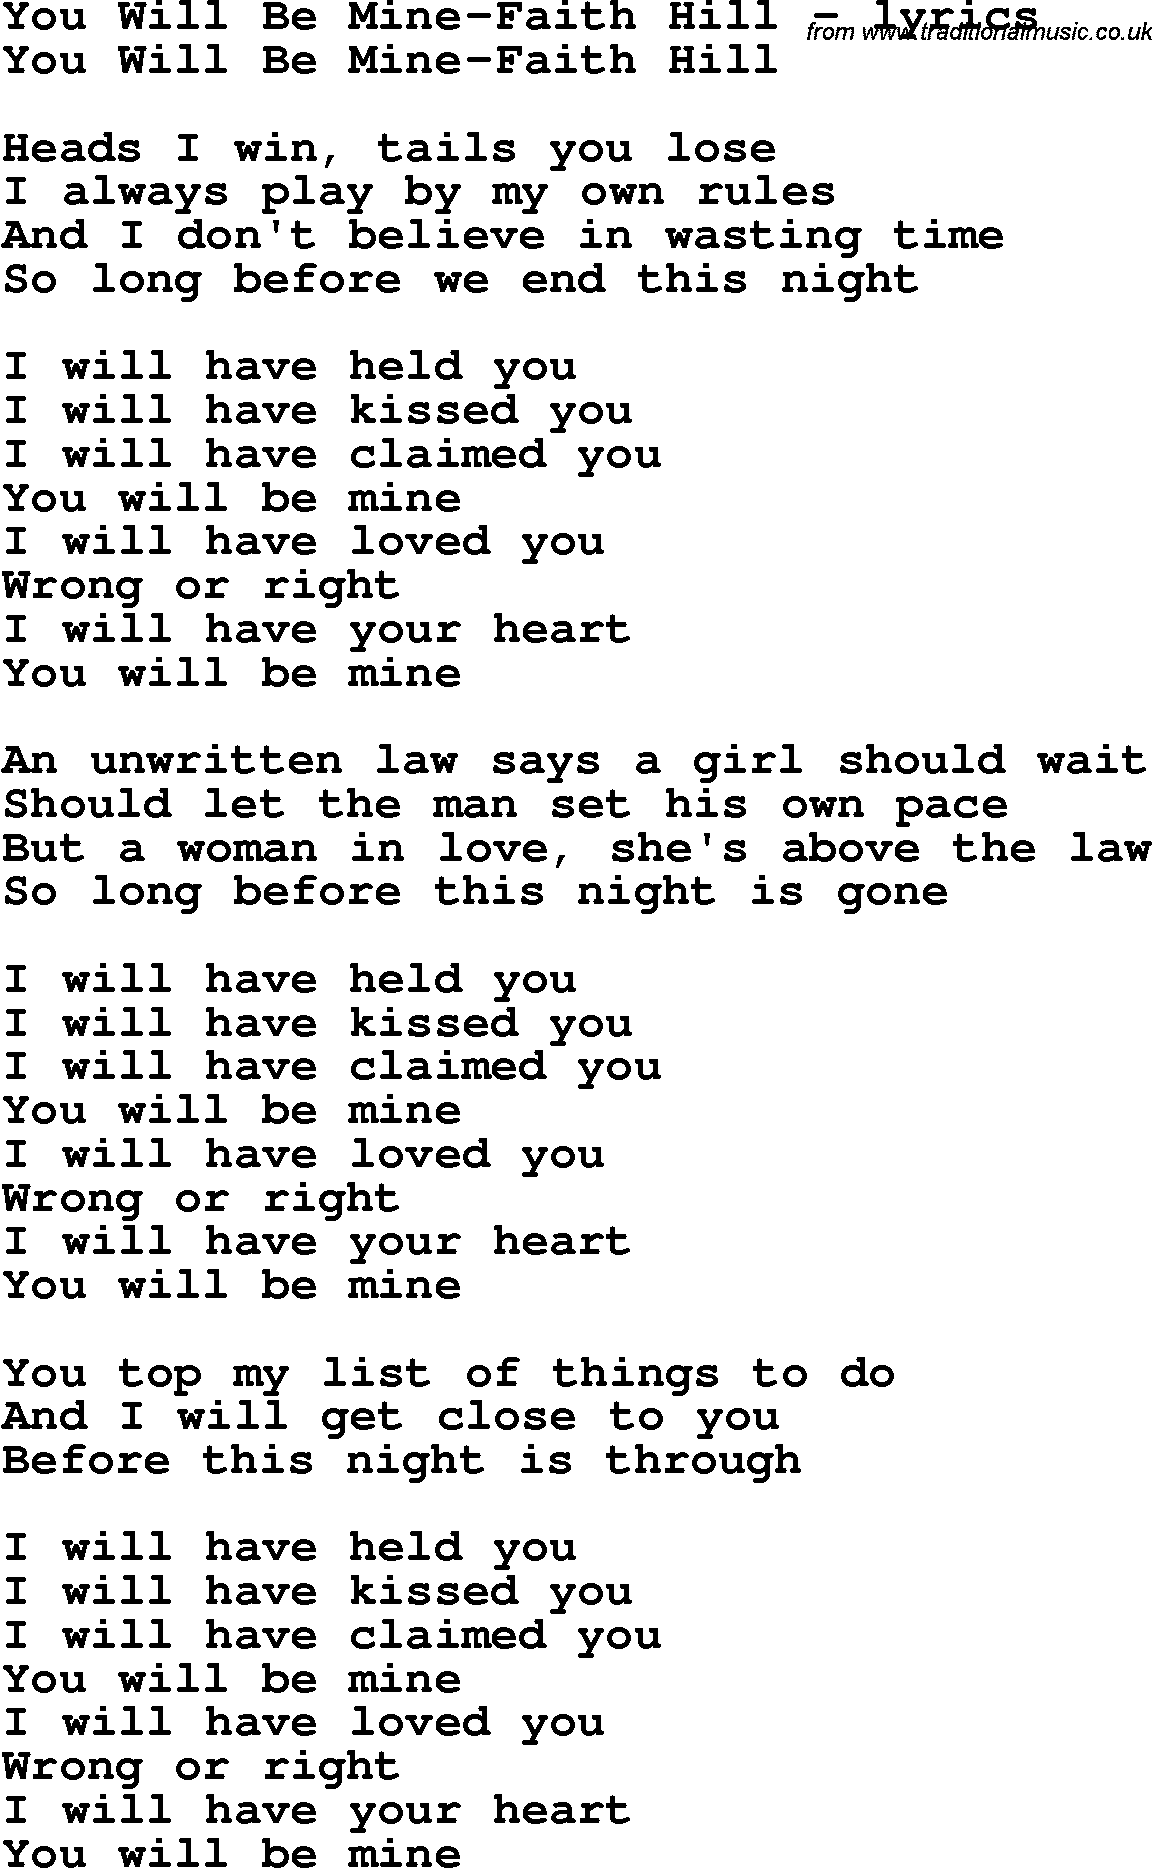 Love Song Lyrics for: You Will Be Mine-Faith Hill